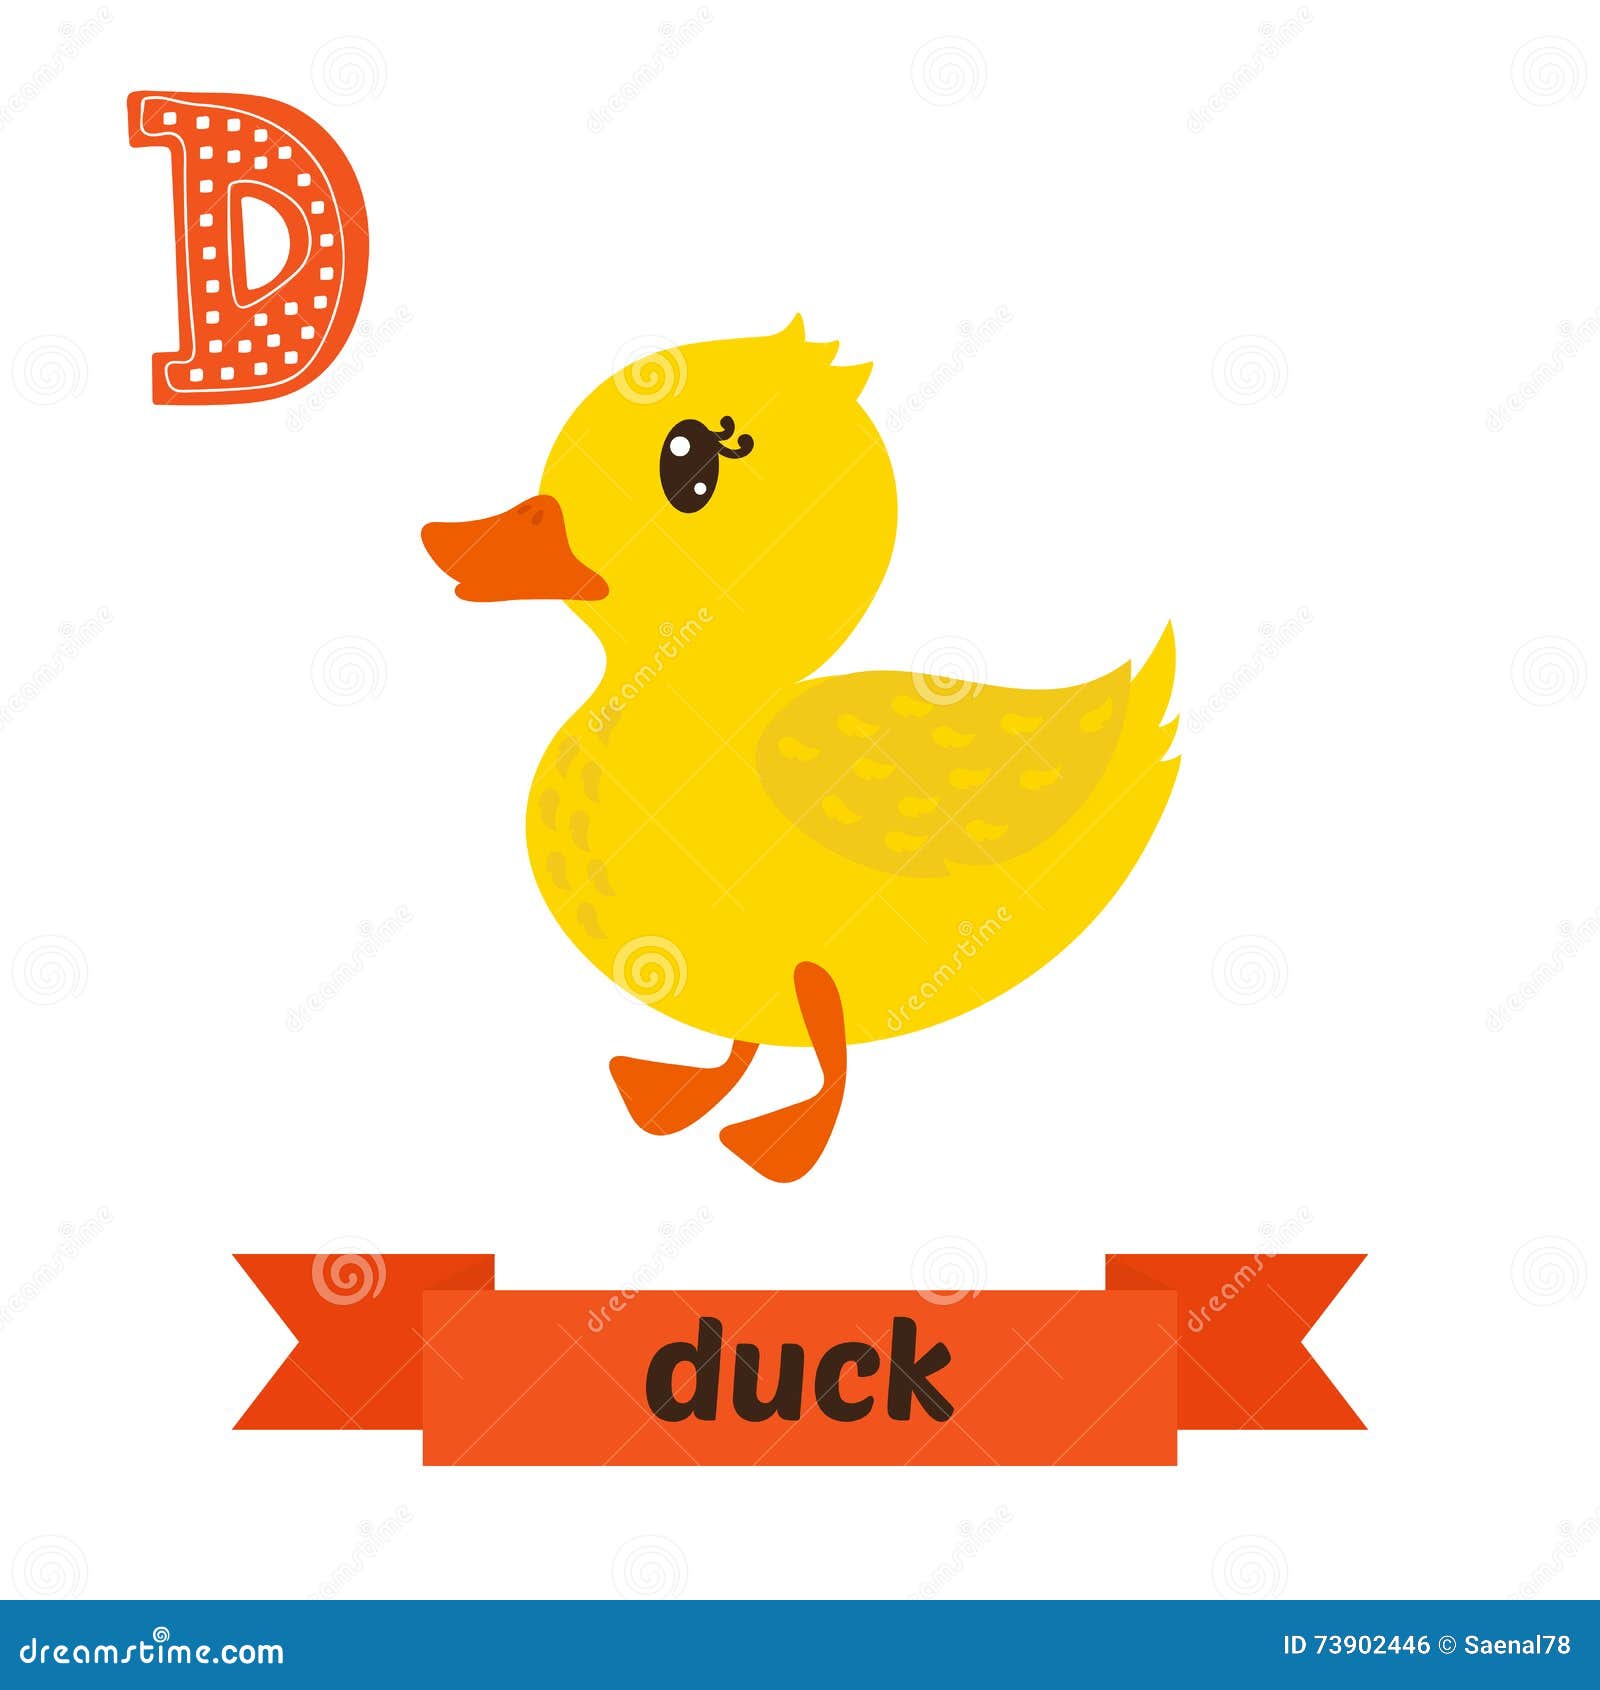 Слово duck. Утка буква d. Duck карточка на английском. Английские утки. Английский алфавит с картинками d Duck.